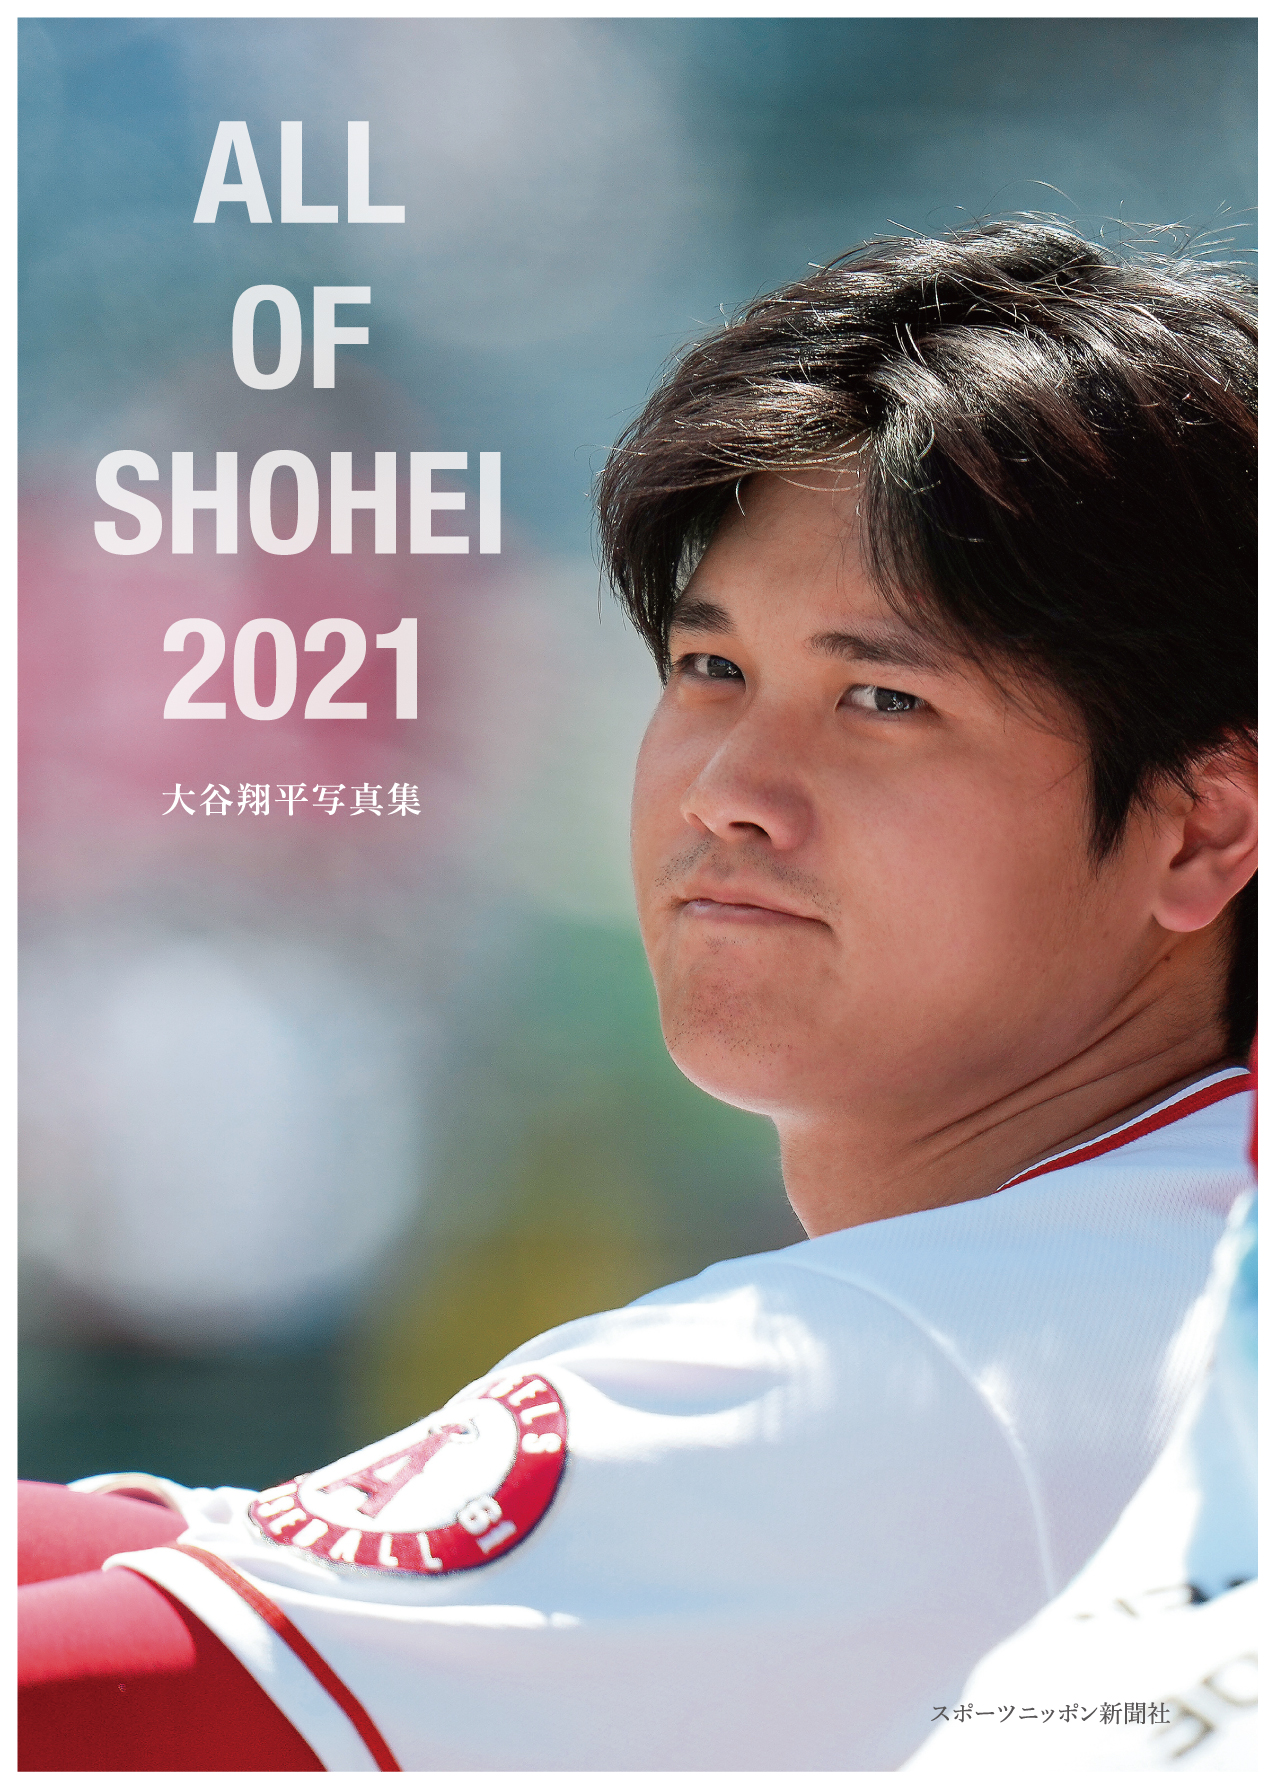 スポニチ 大谷翔平写真集 「ALL OF SHOHEI 2021」が12月15に発売! Liveen Times